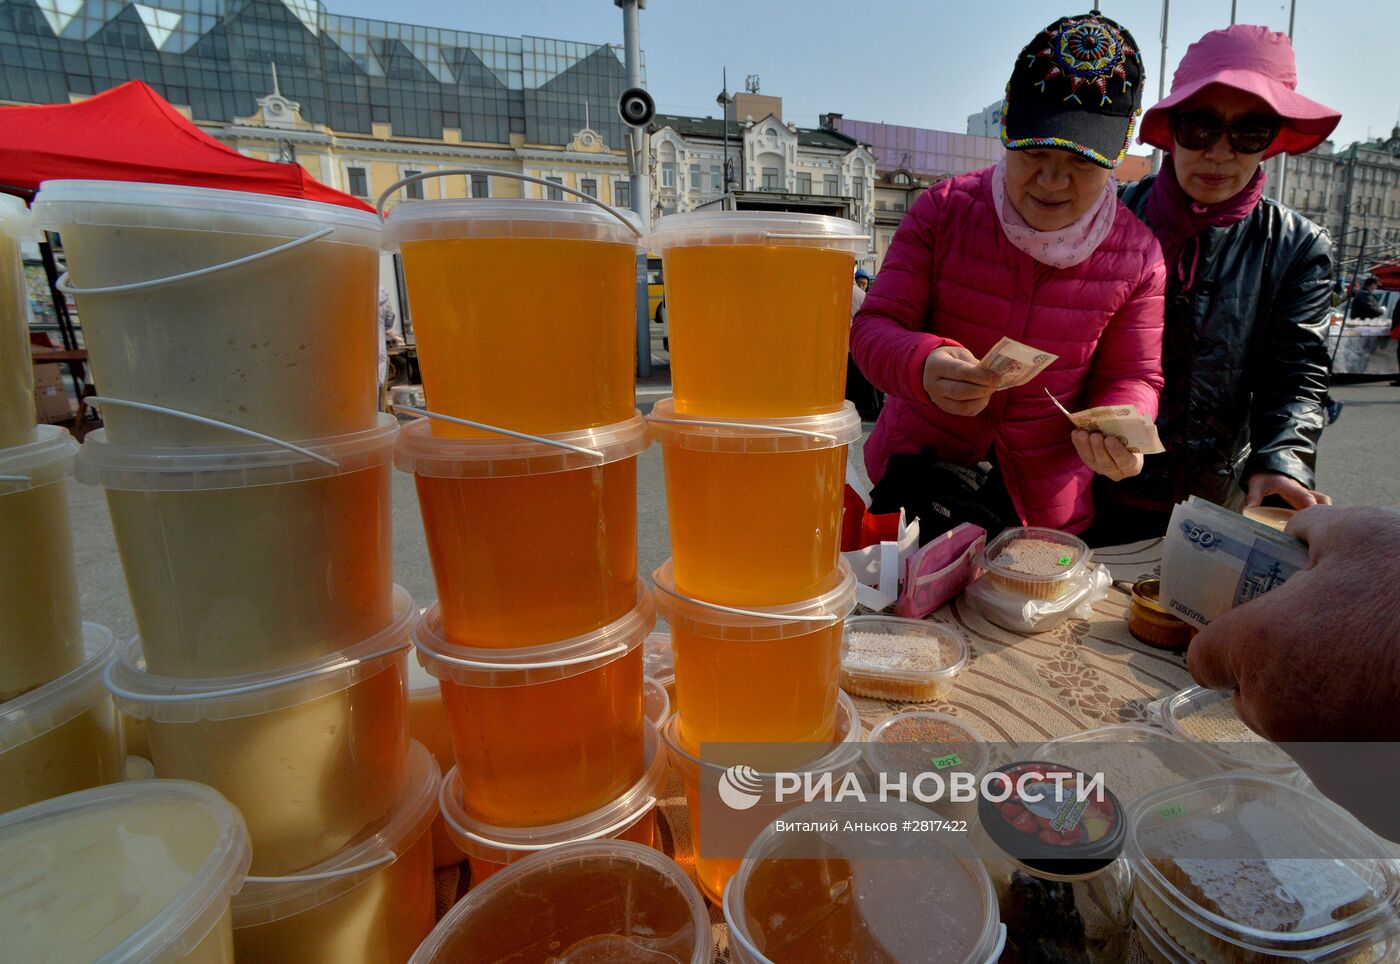 Продовольственная ярмарка на центральной площади Владивостока